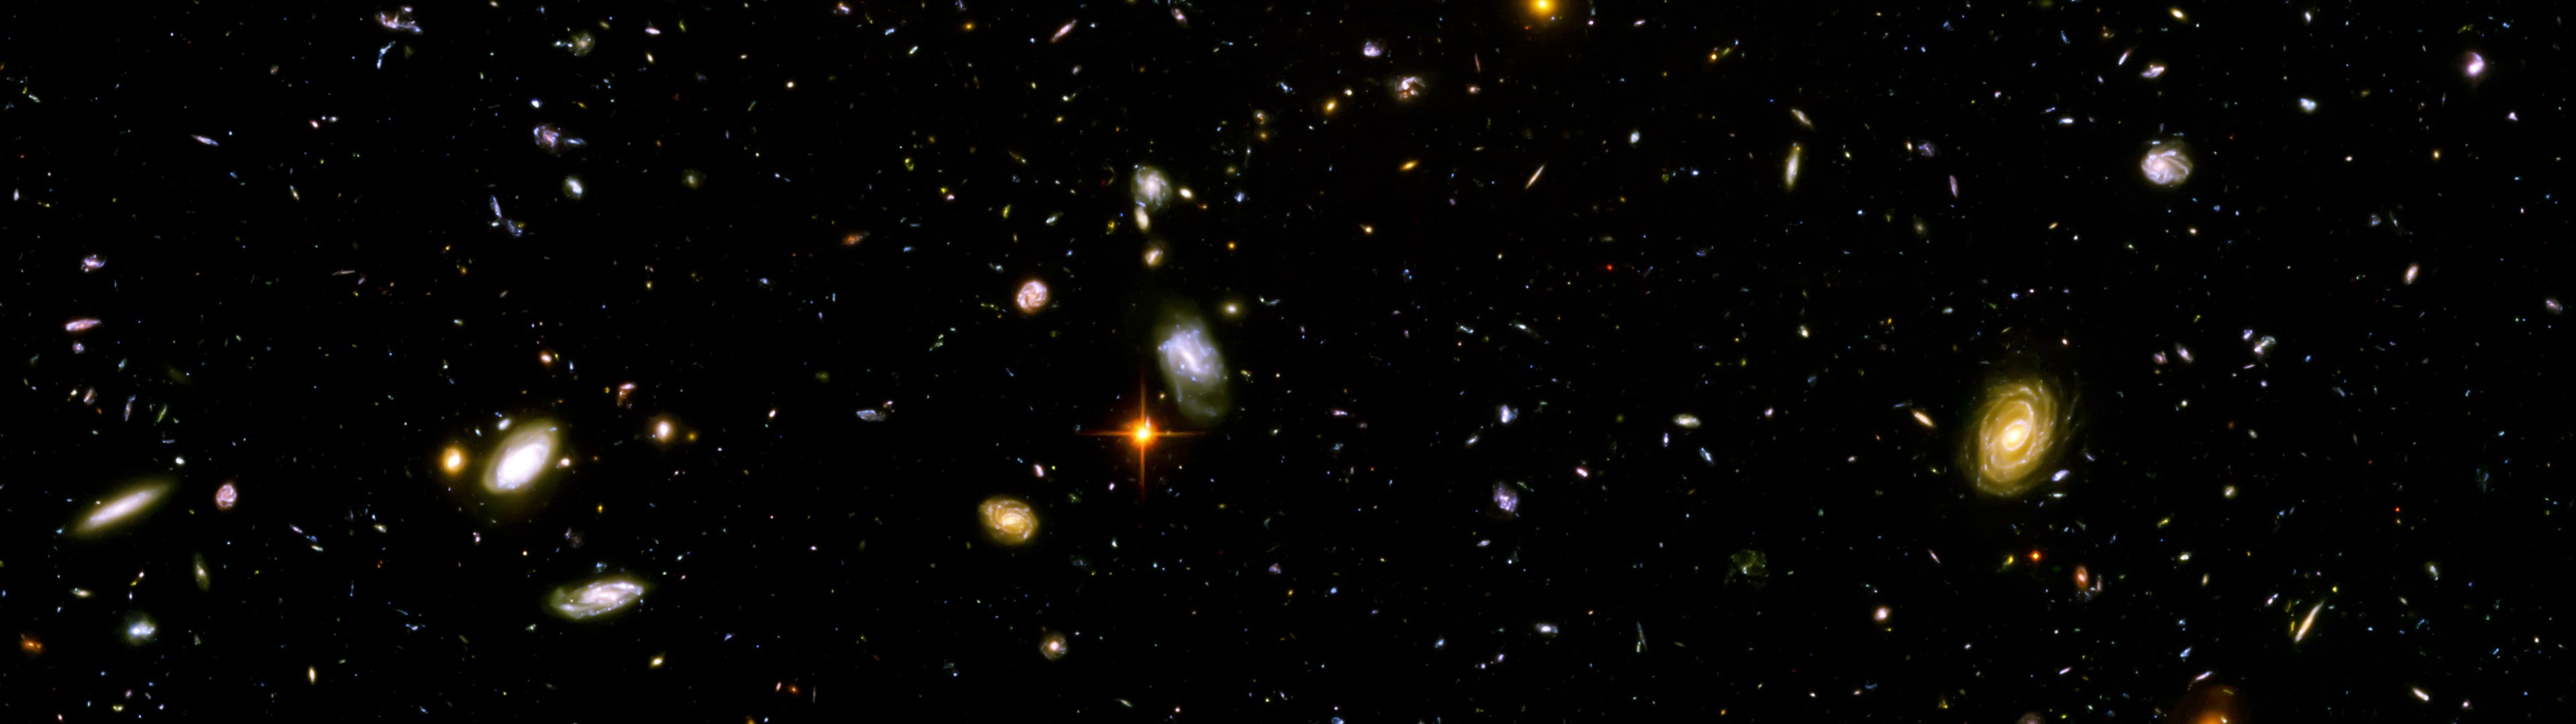 General 3840x1080 space galaxy Hubble Deep Field digital art space art Hubble